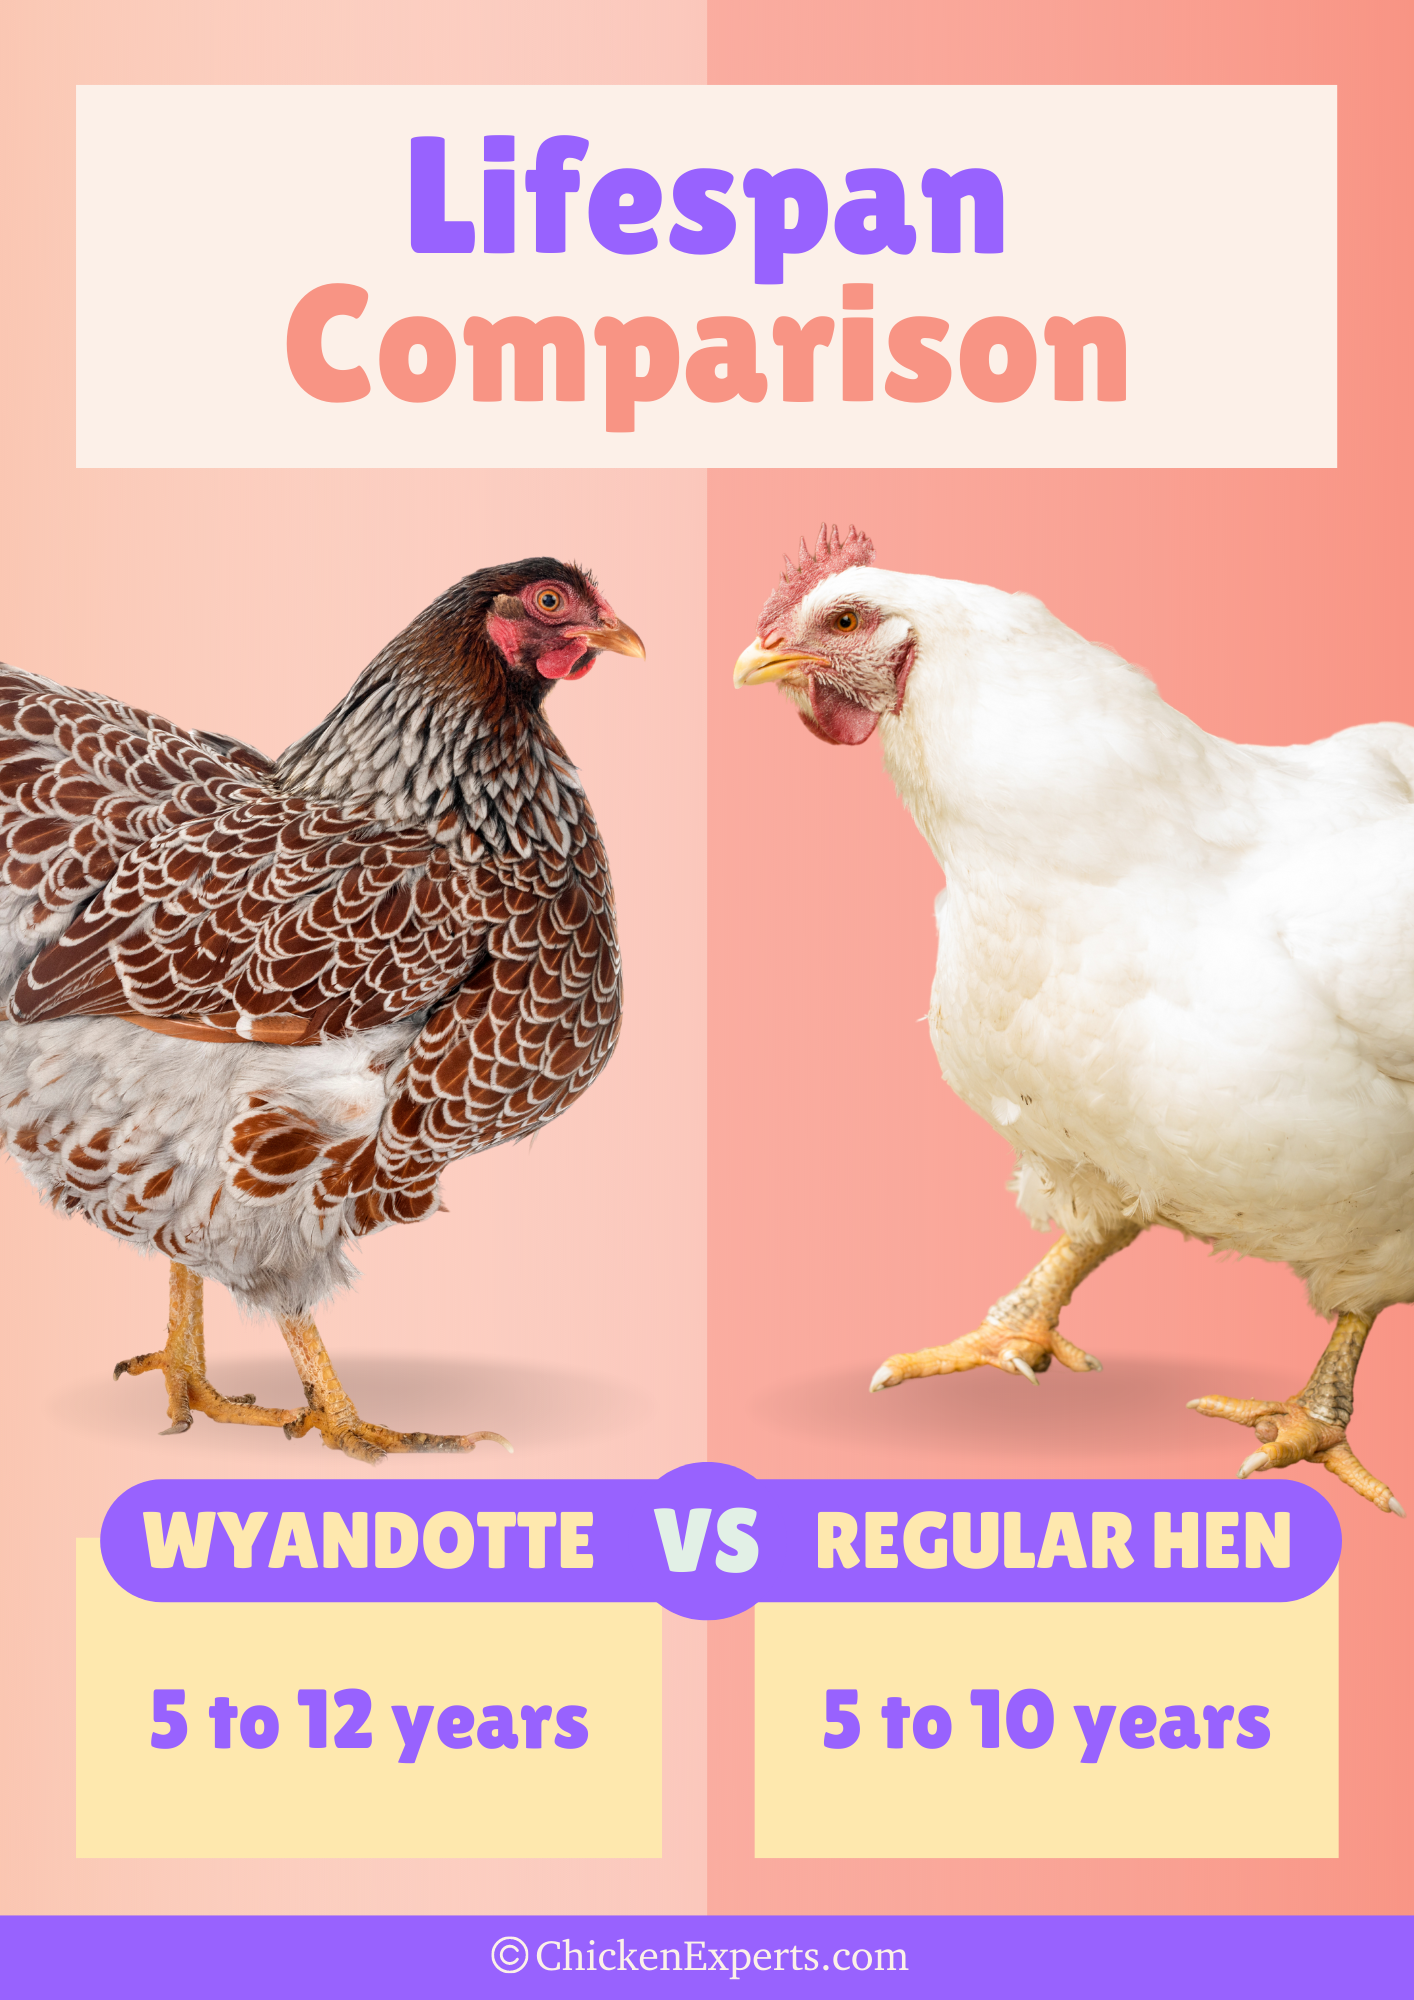 wyandotte chicken breed lifespan comparison